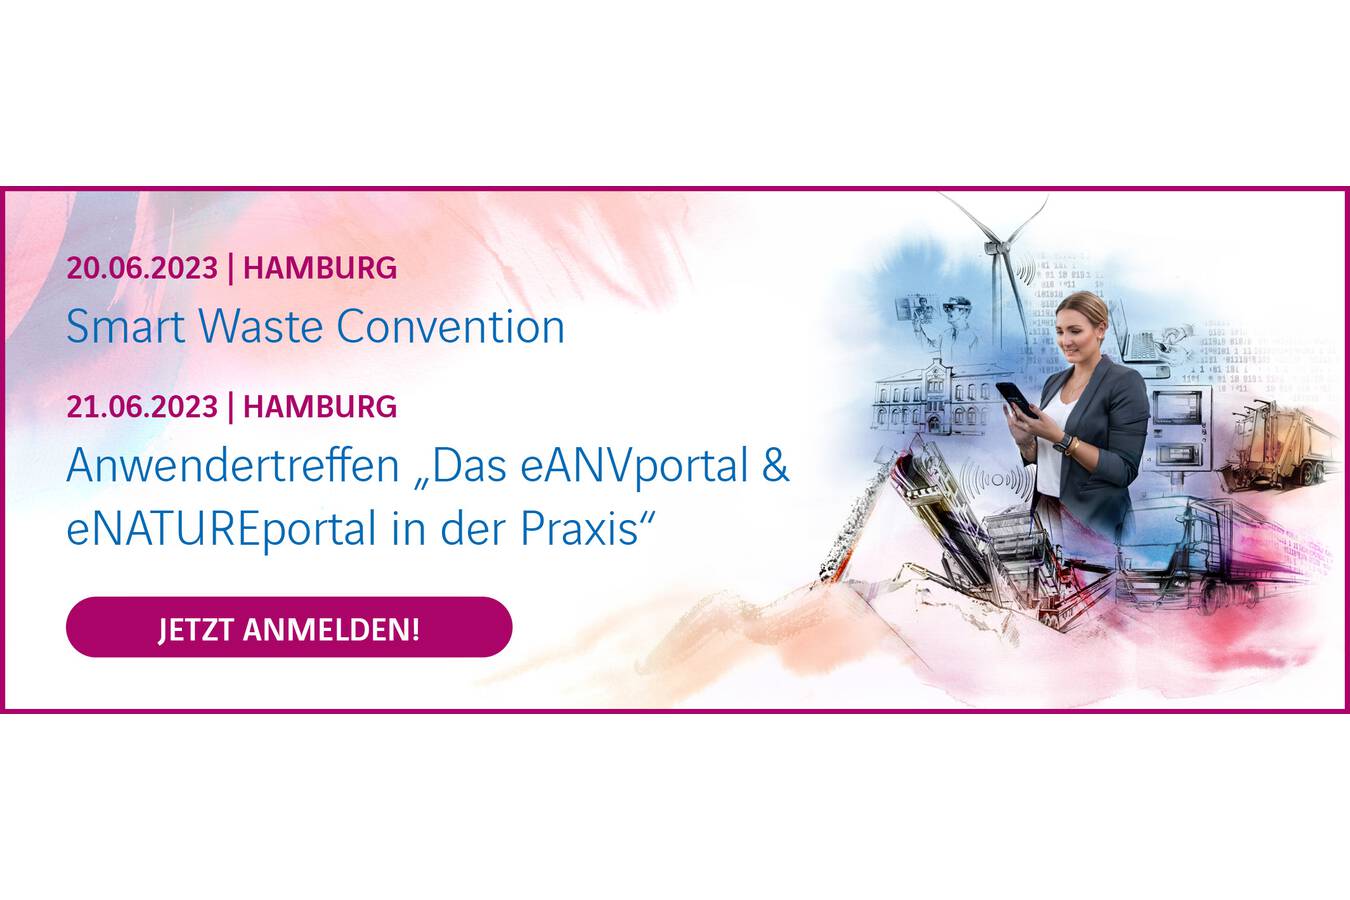 13. Fachtagung ”Smart Waste Convention” am 20.06.2022 in Hamburg Fachvorträge sowie Praxis- und Erfahrungsberichte aus der Entsorgungs-, Recycling- und Umweltbranche 